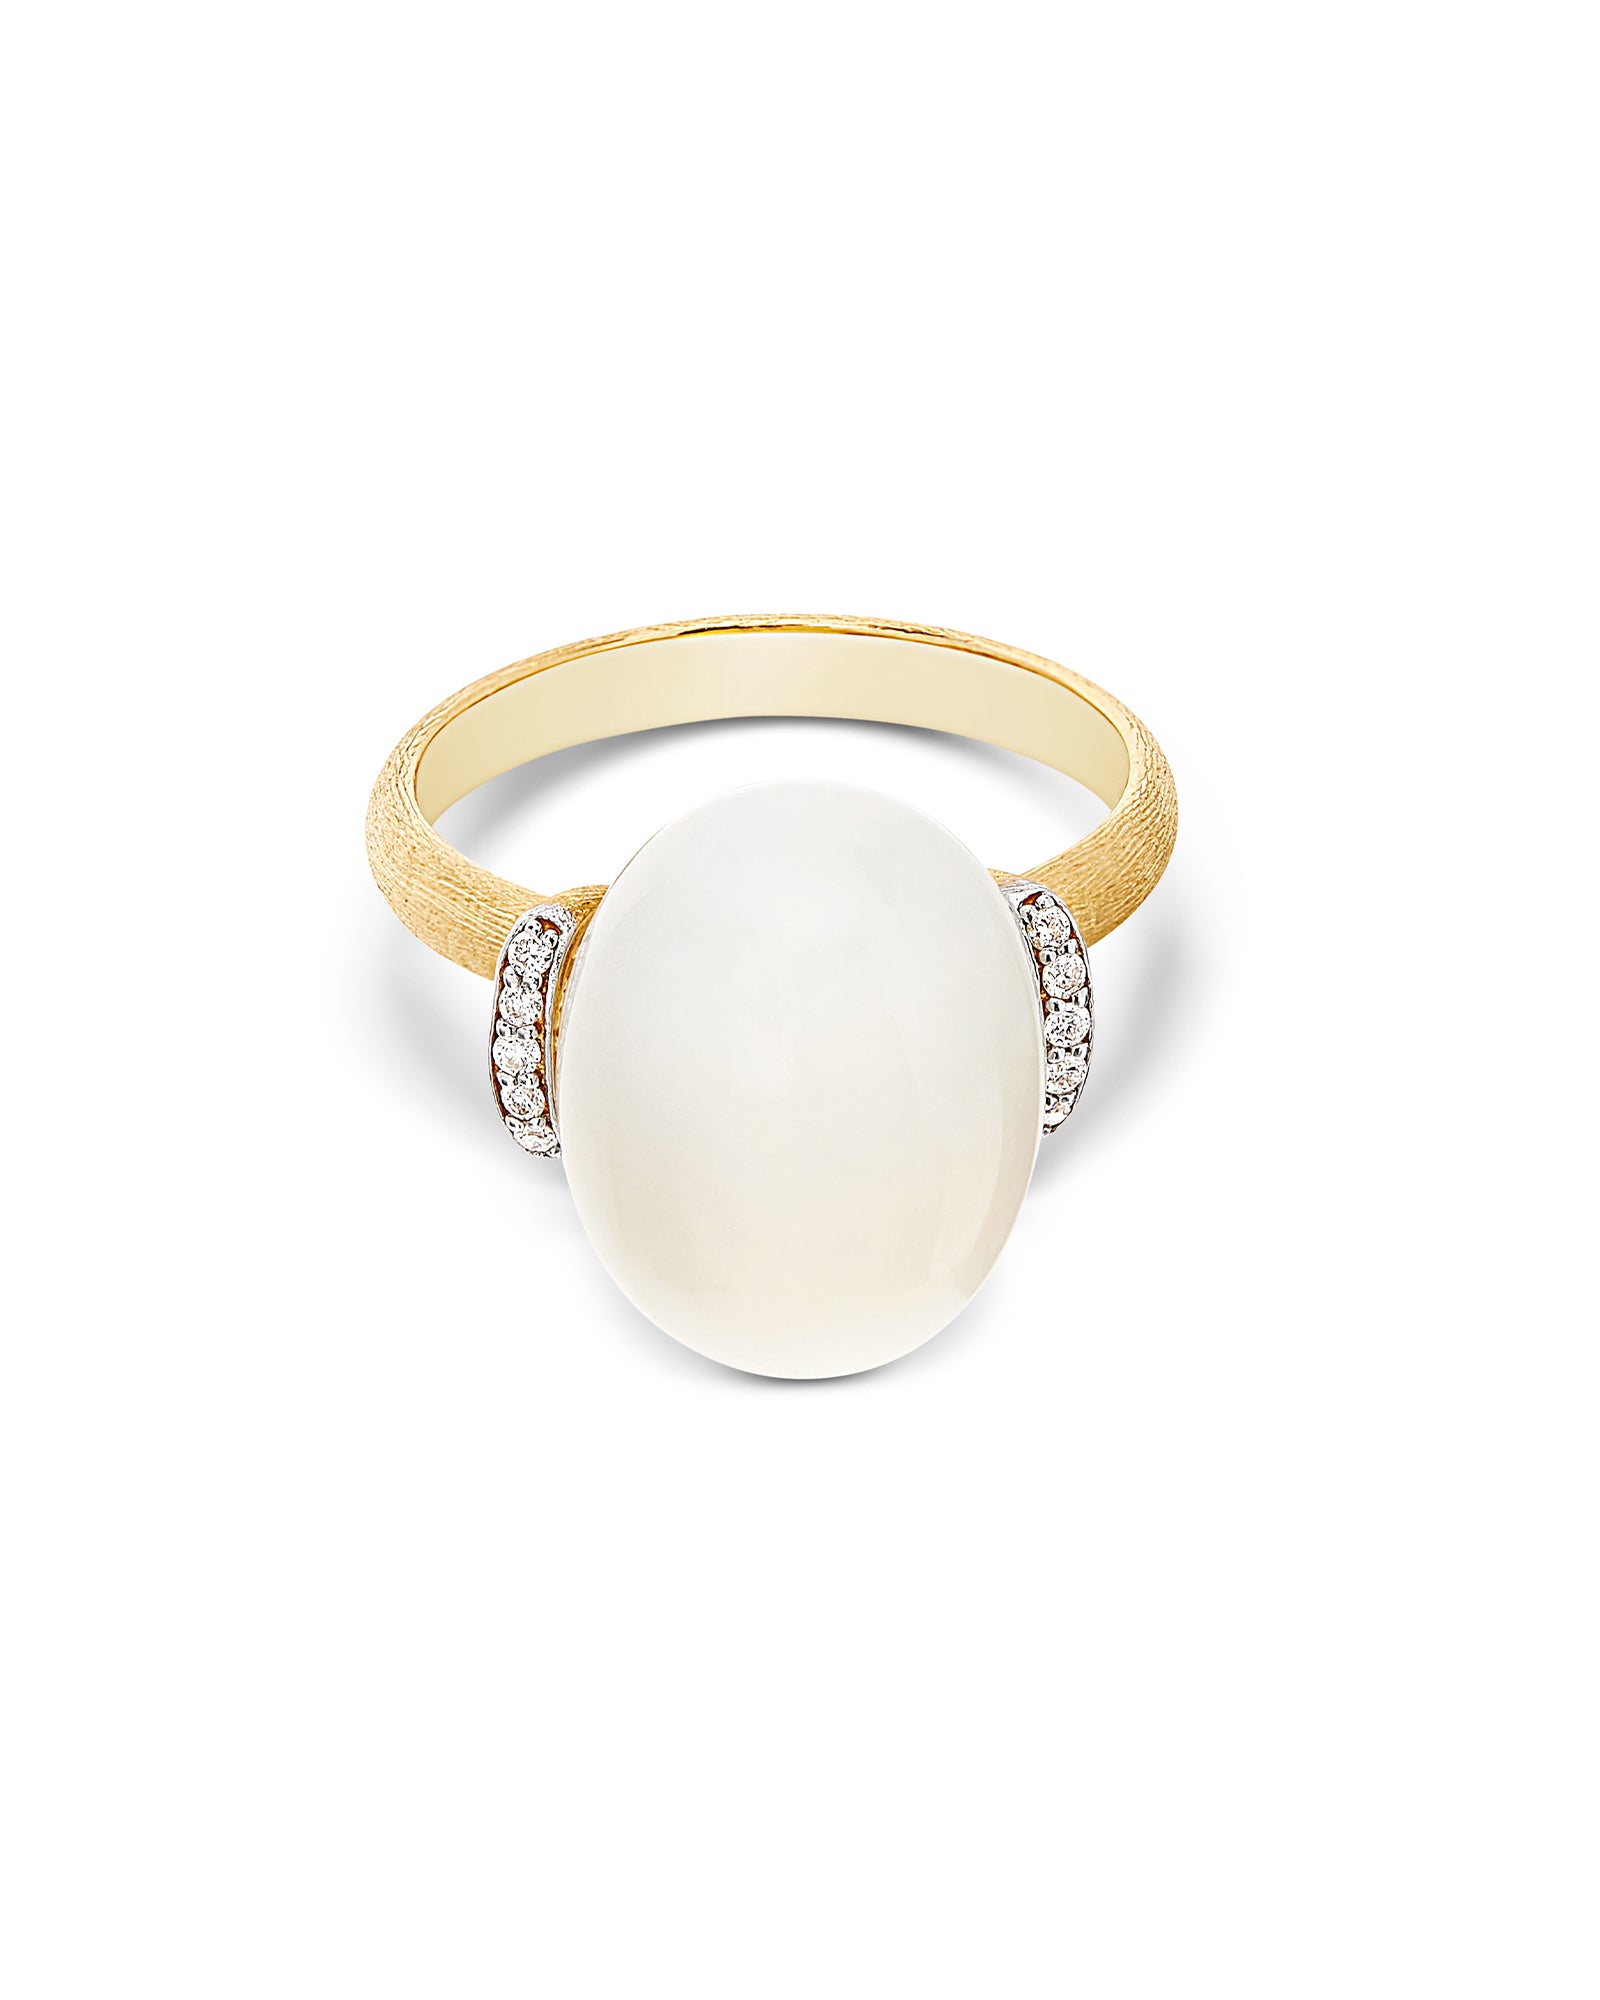 "White Desert" Gold, diamonds and Moonstone Ring (LARGE)